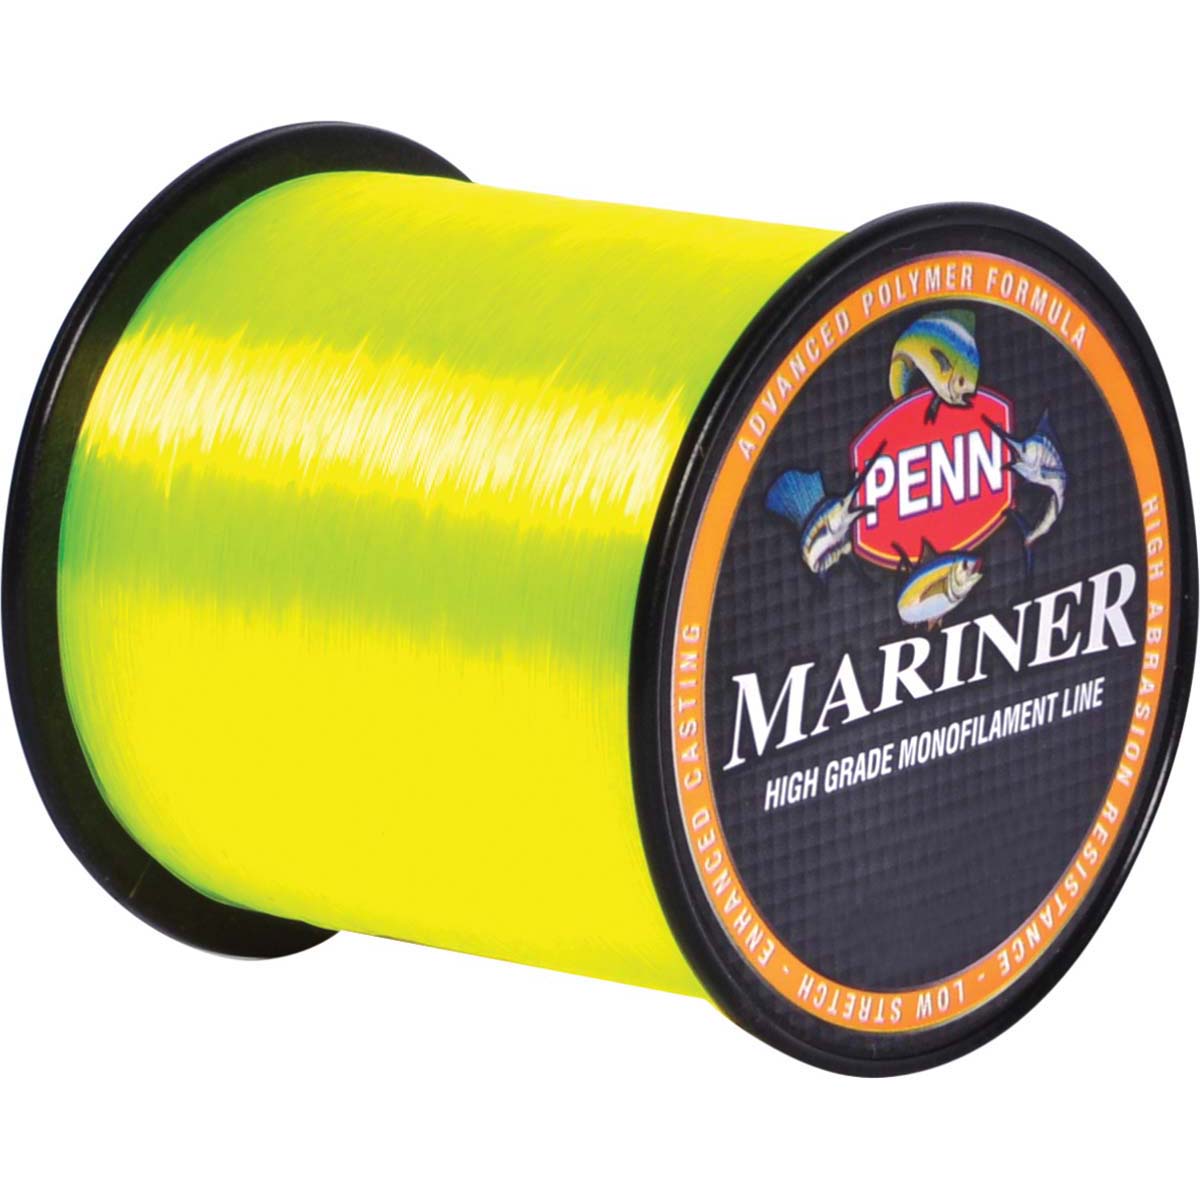 Penn Mariner Mono Line 245m 12lb 12lb